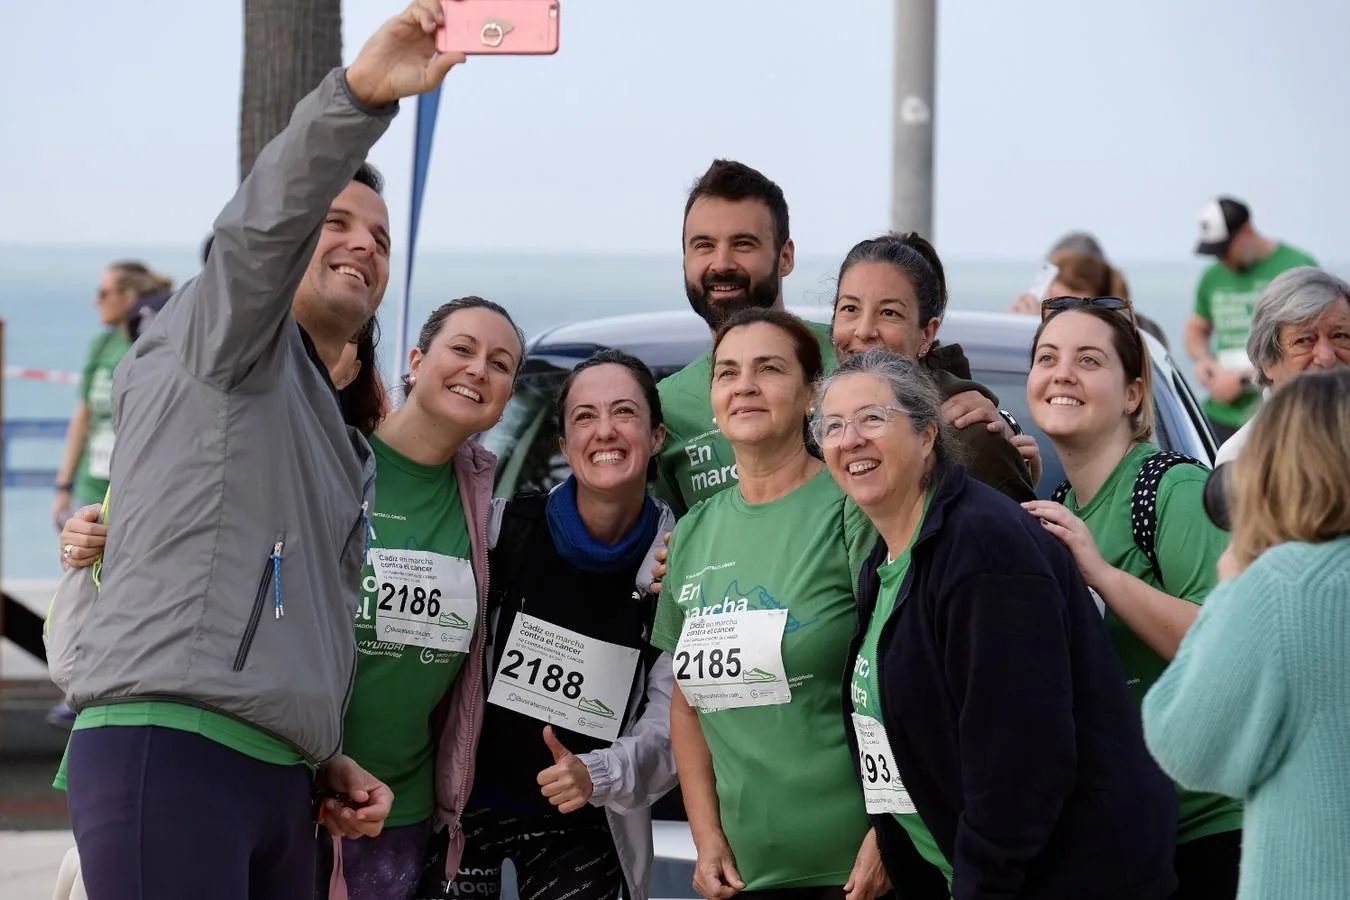 Fotos: Cádiz, en marcha contra el cáncer